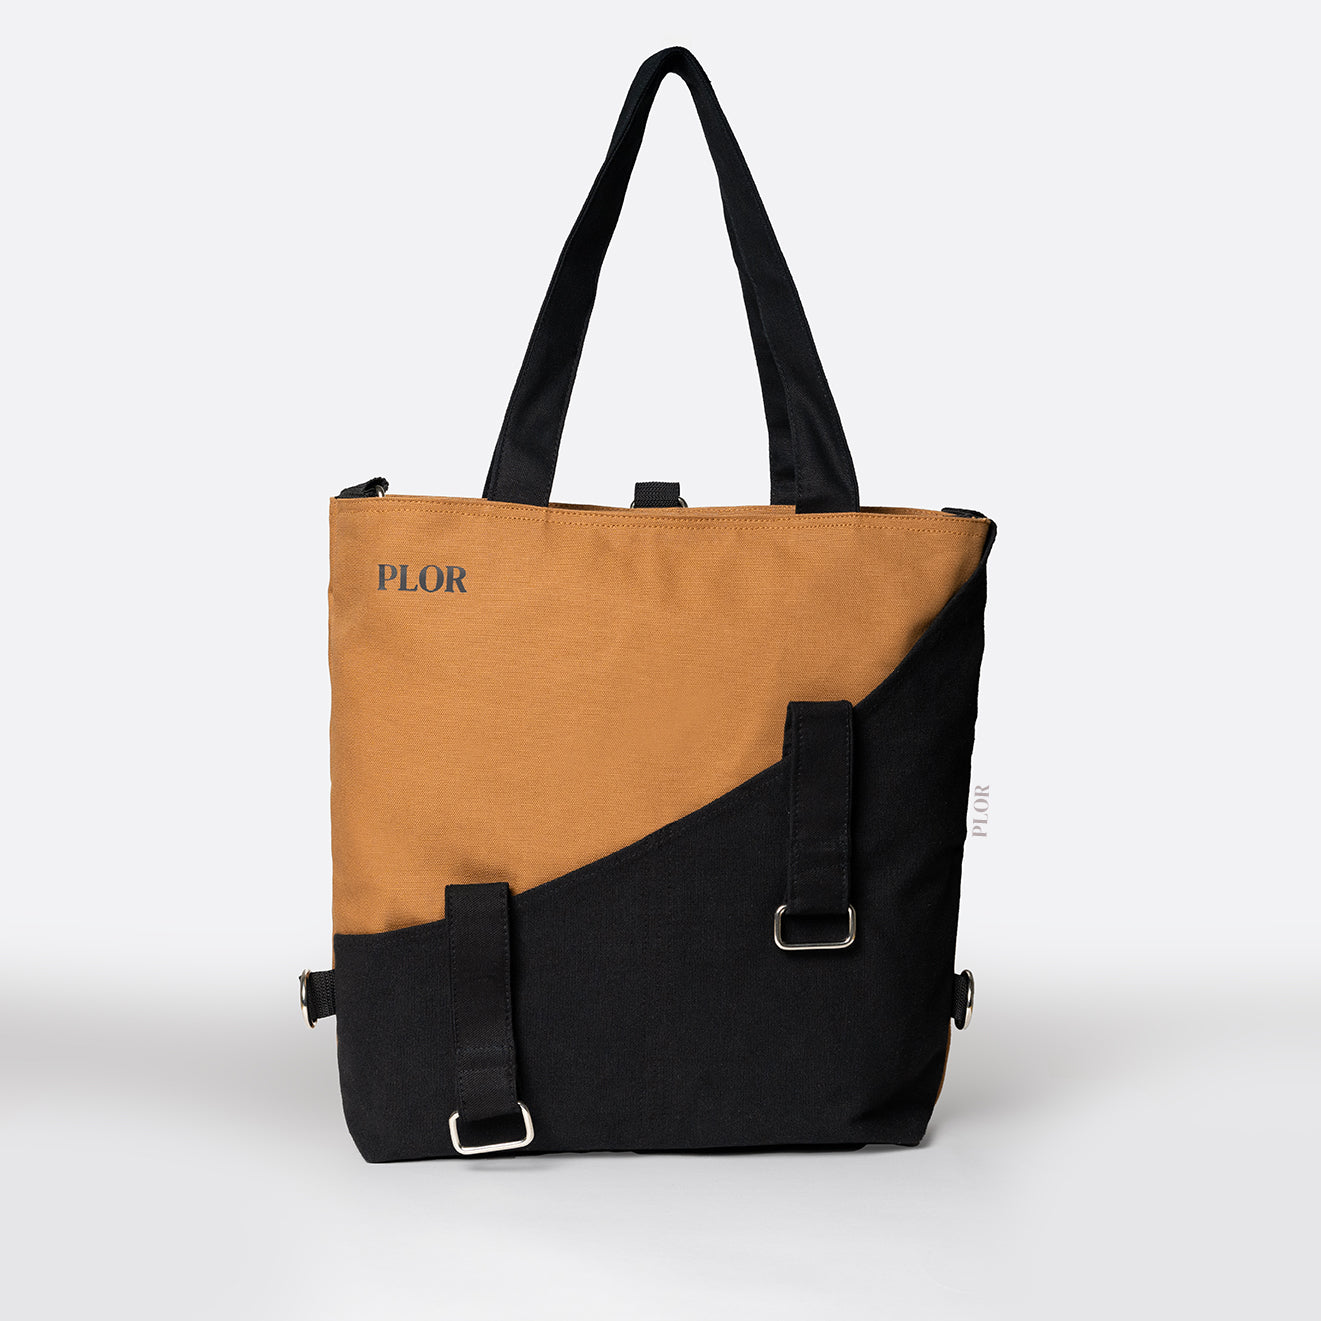 Classic Black-Brown Tote Bag